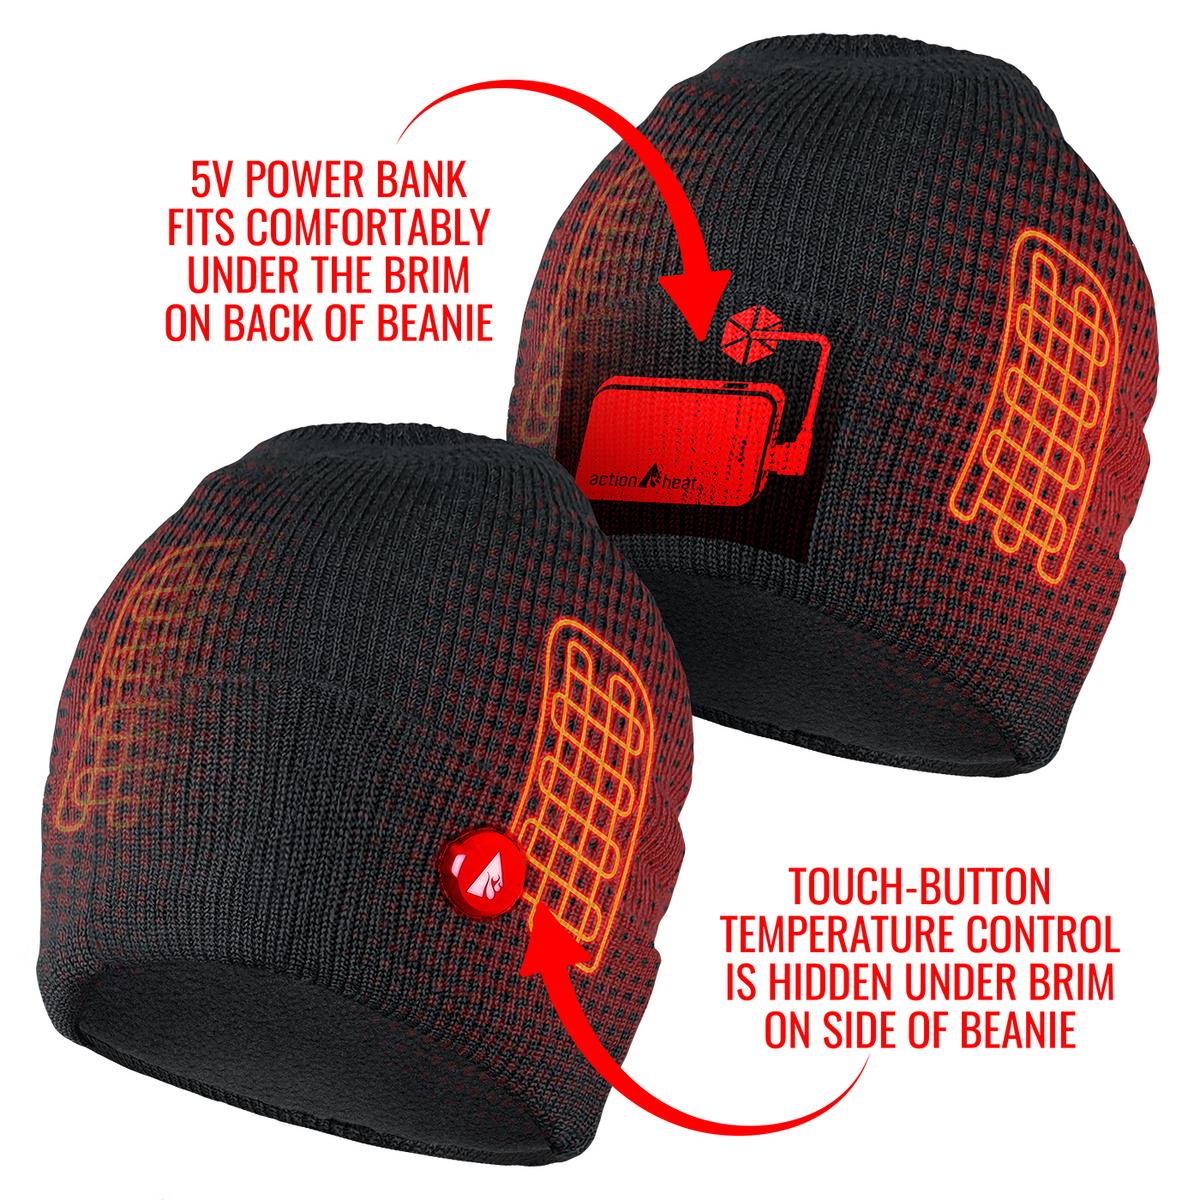 ActionHeat 5V Battery Heated Knit Hat & Gaiter Bundle - Full Set